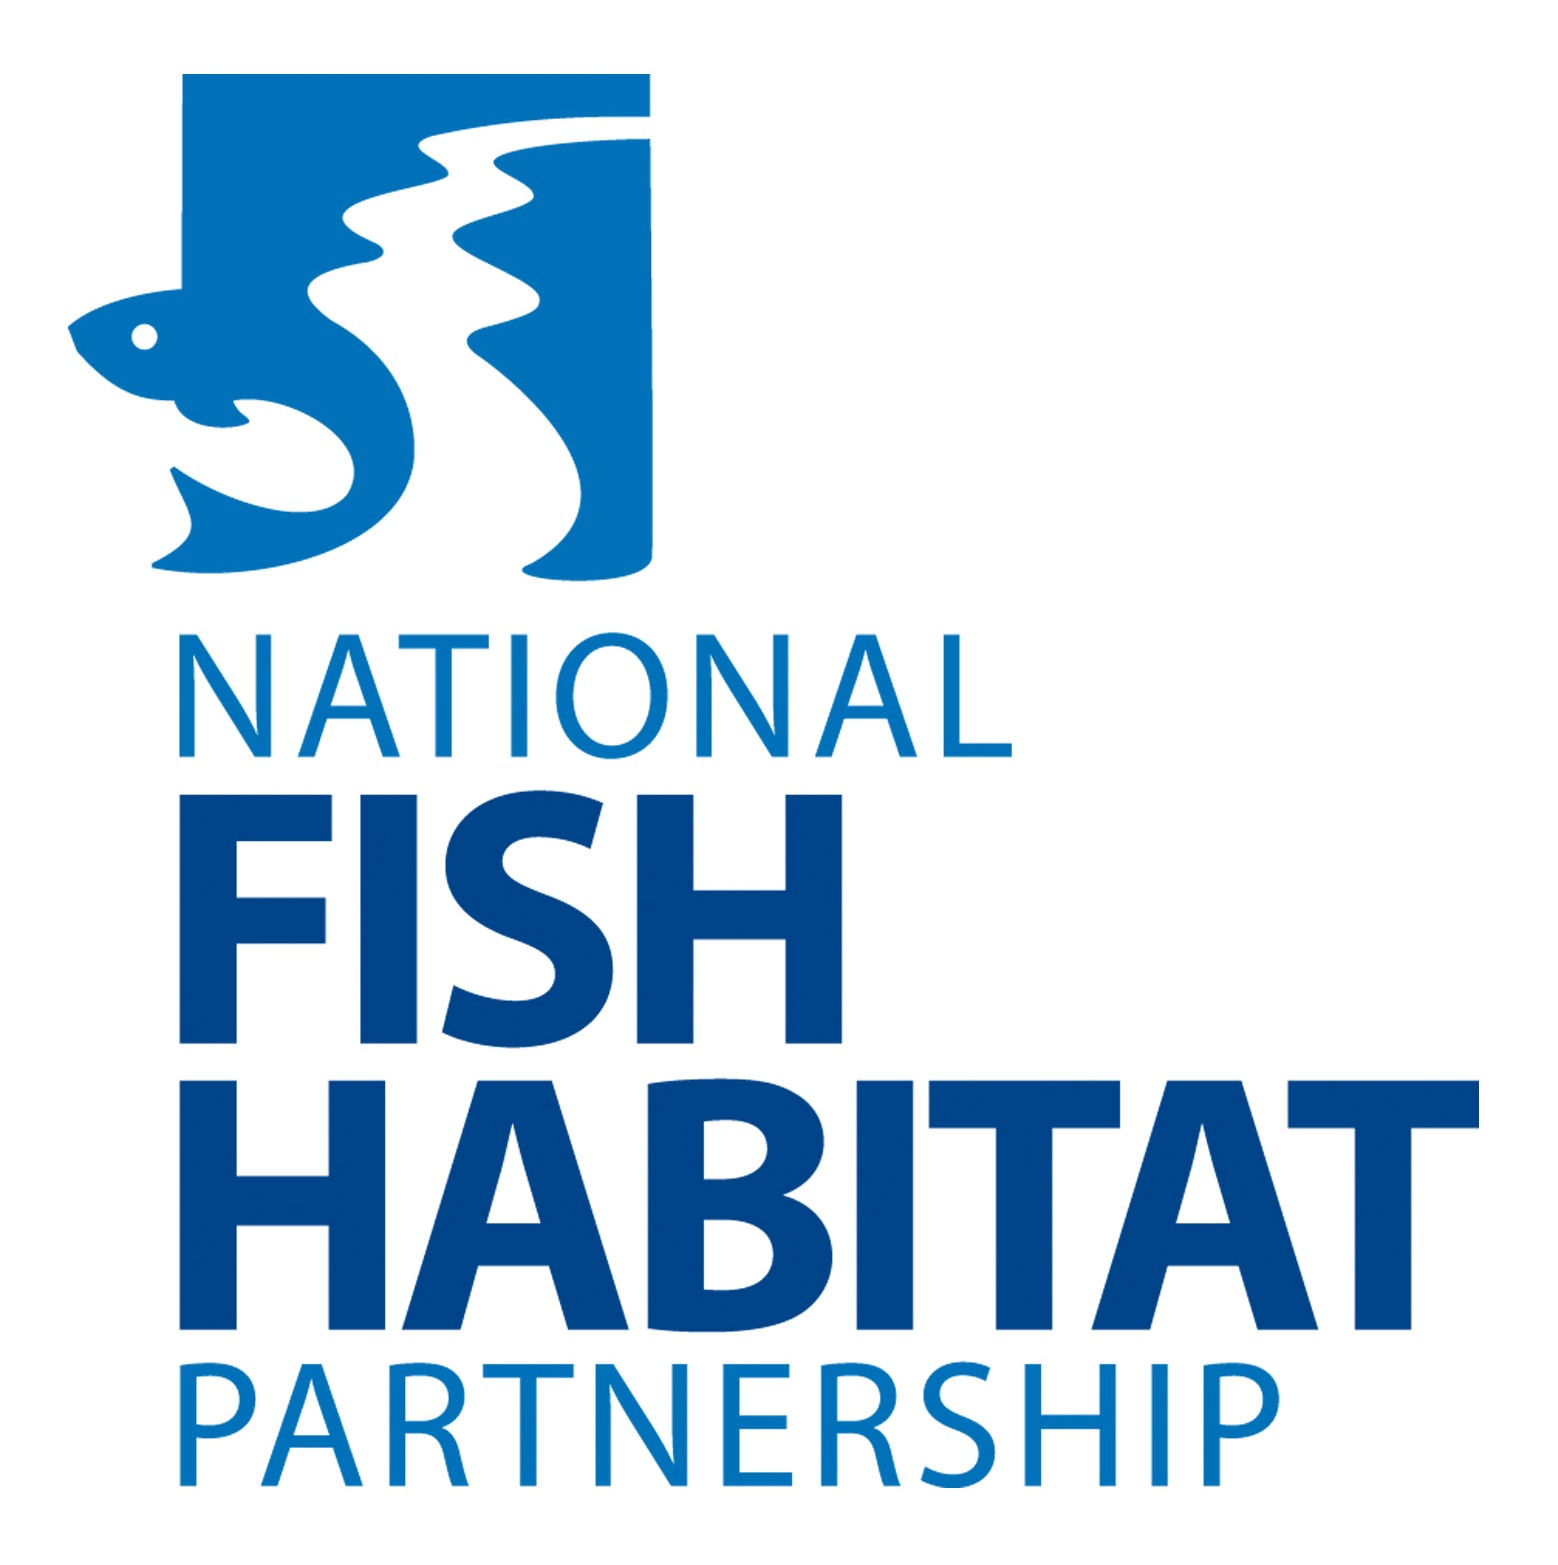 National Fish Habitat Partnership Board Seeking Nominations for Board Membership